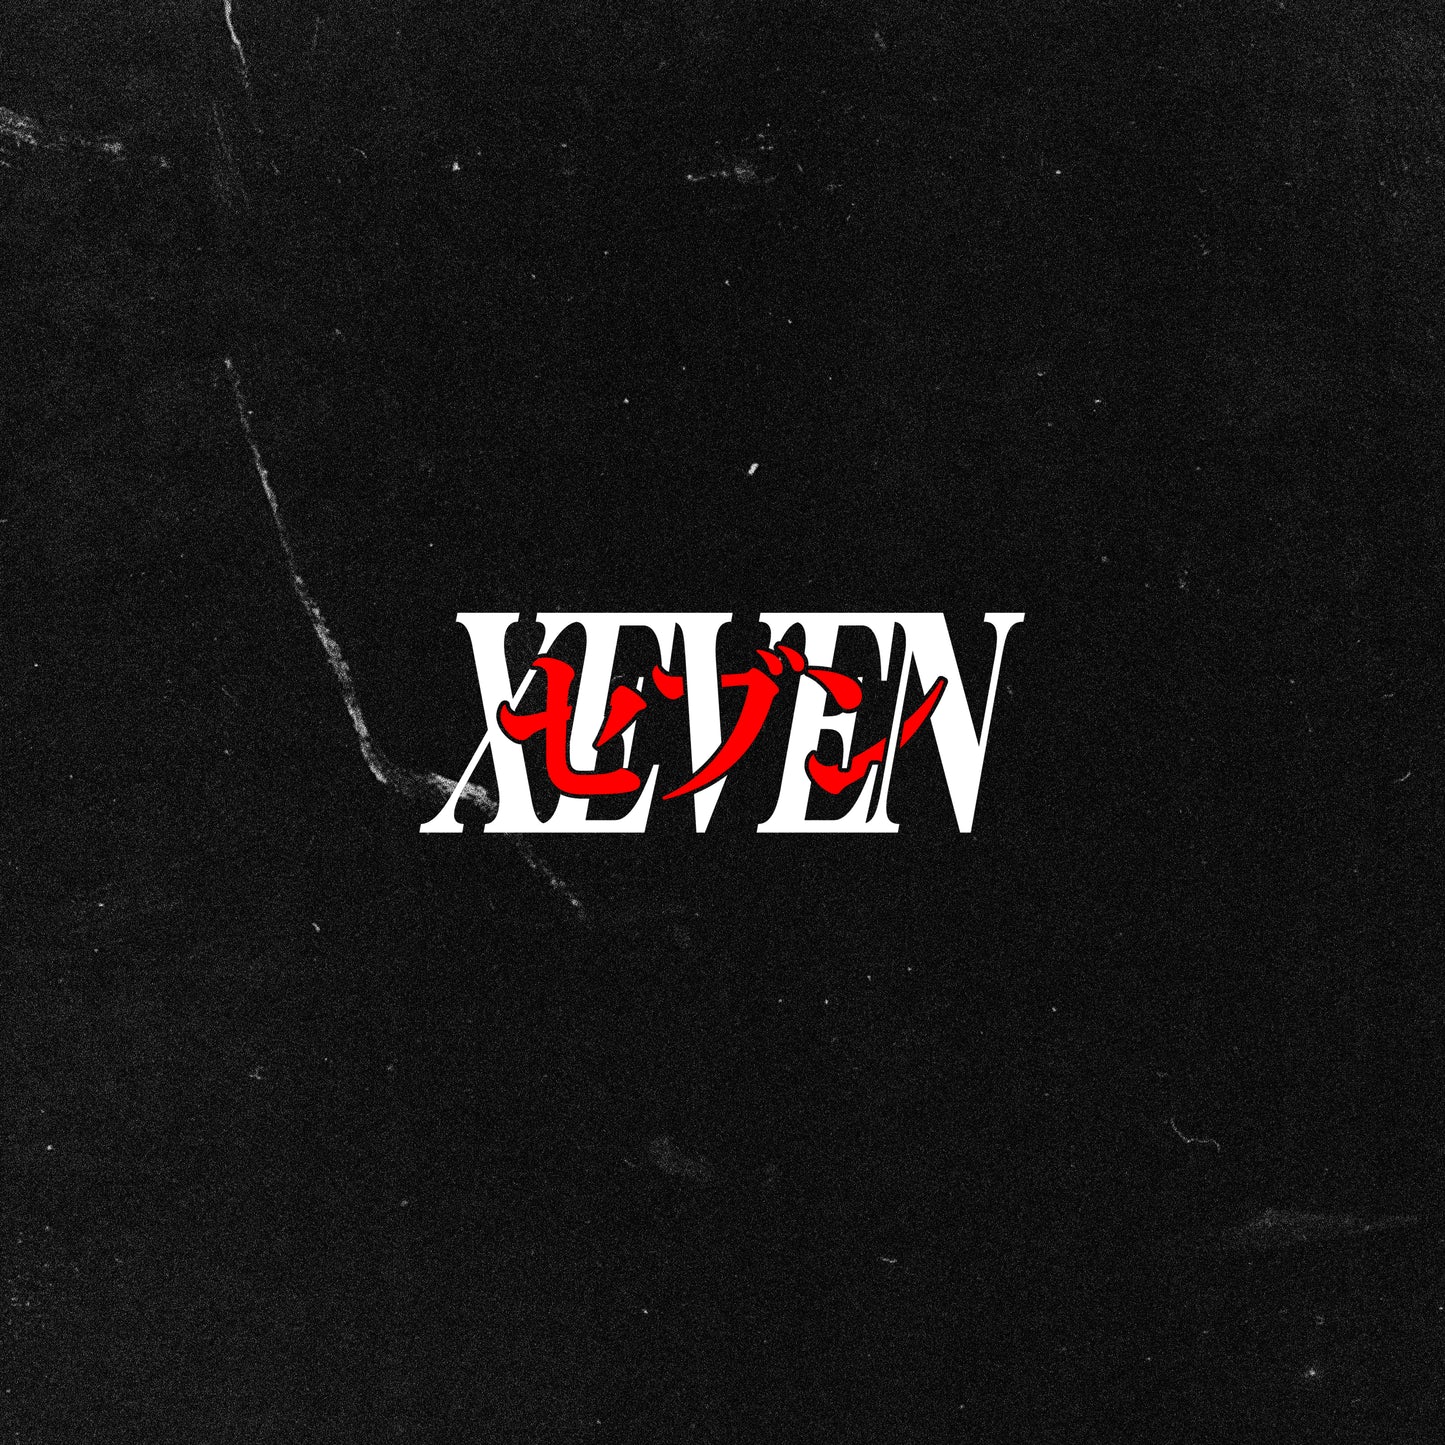 XEVEN V3